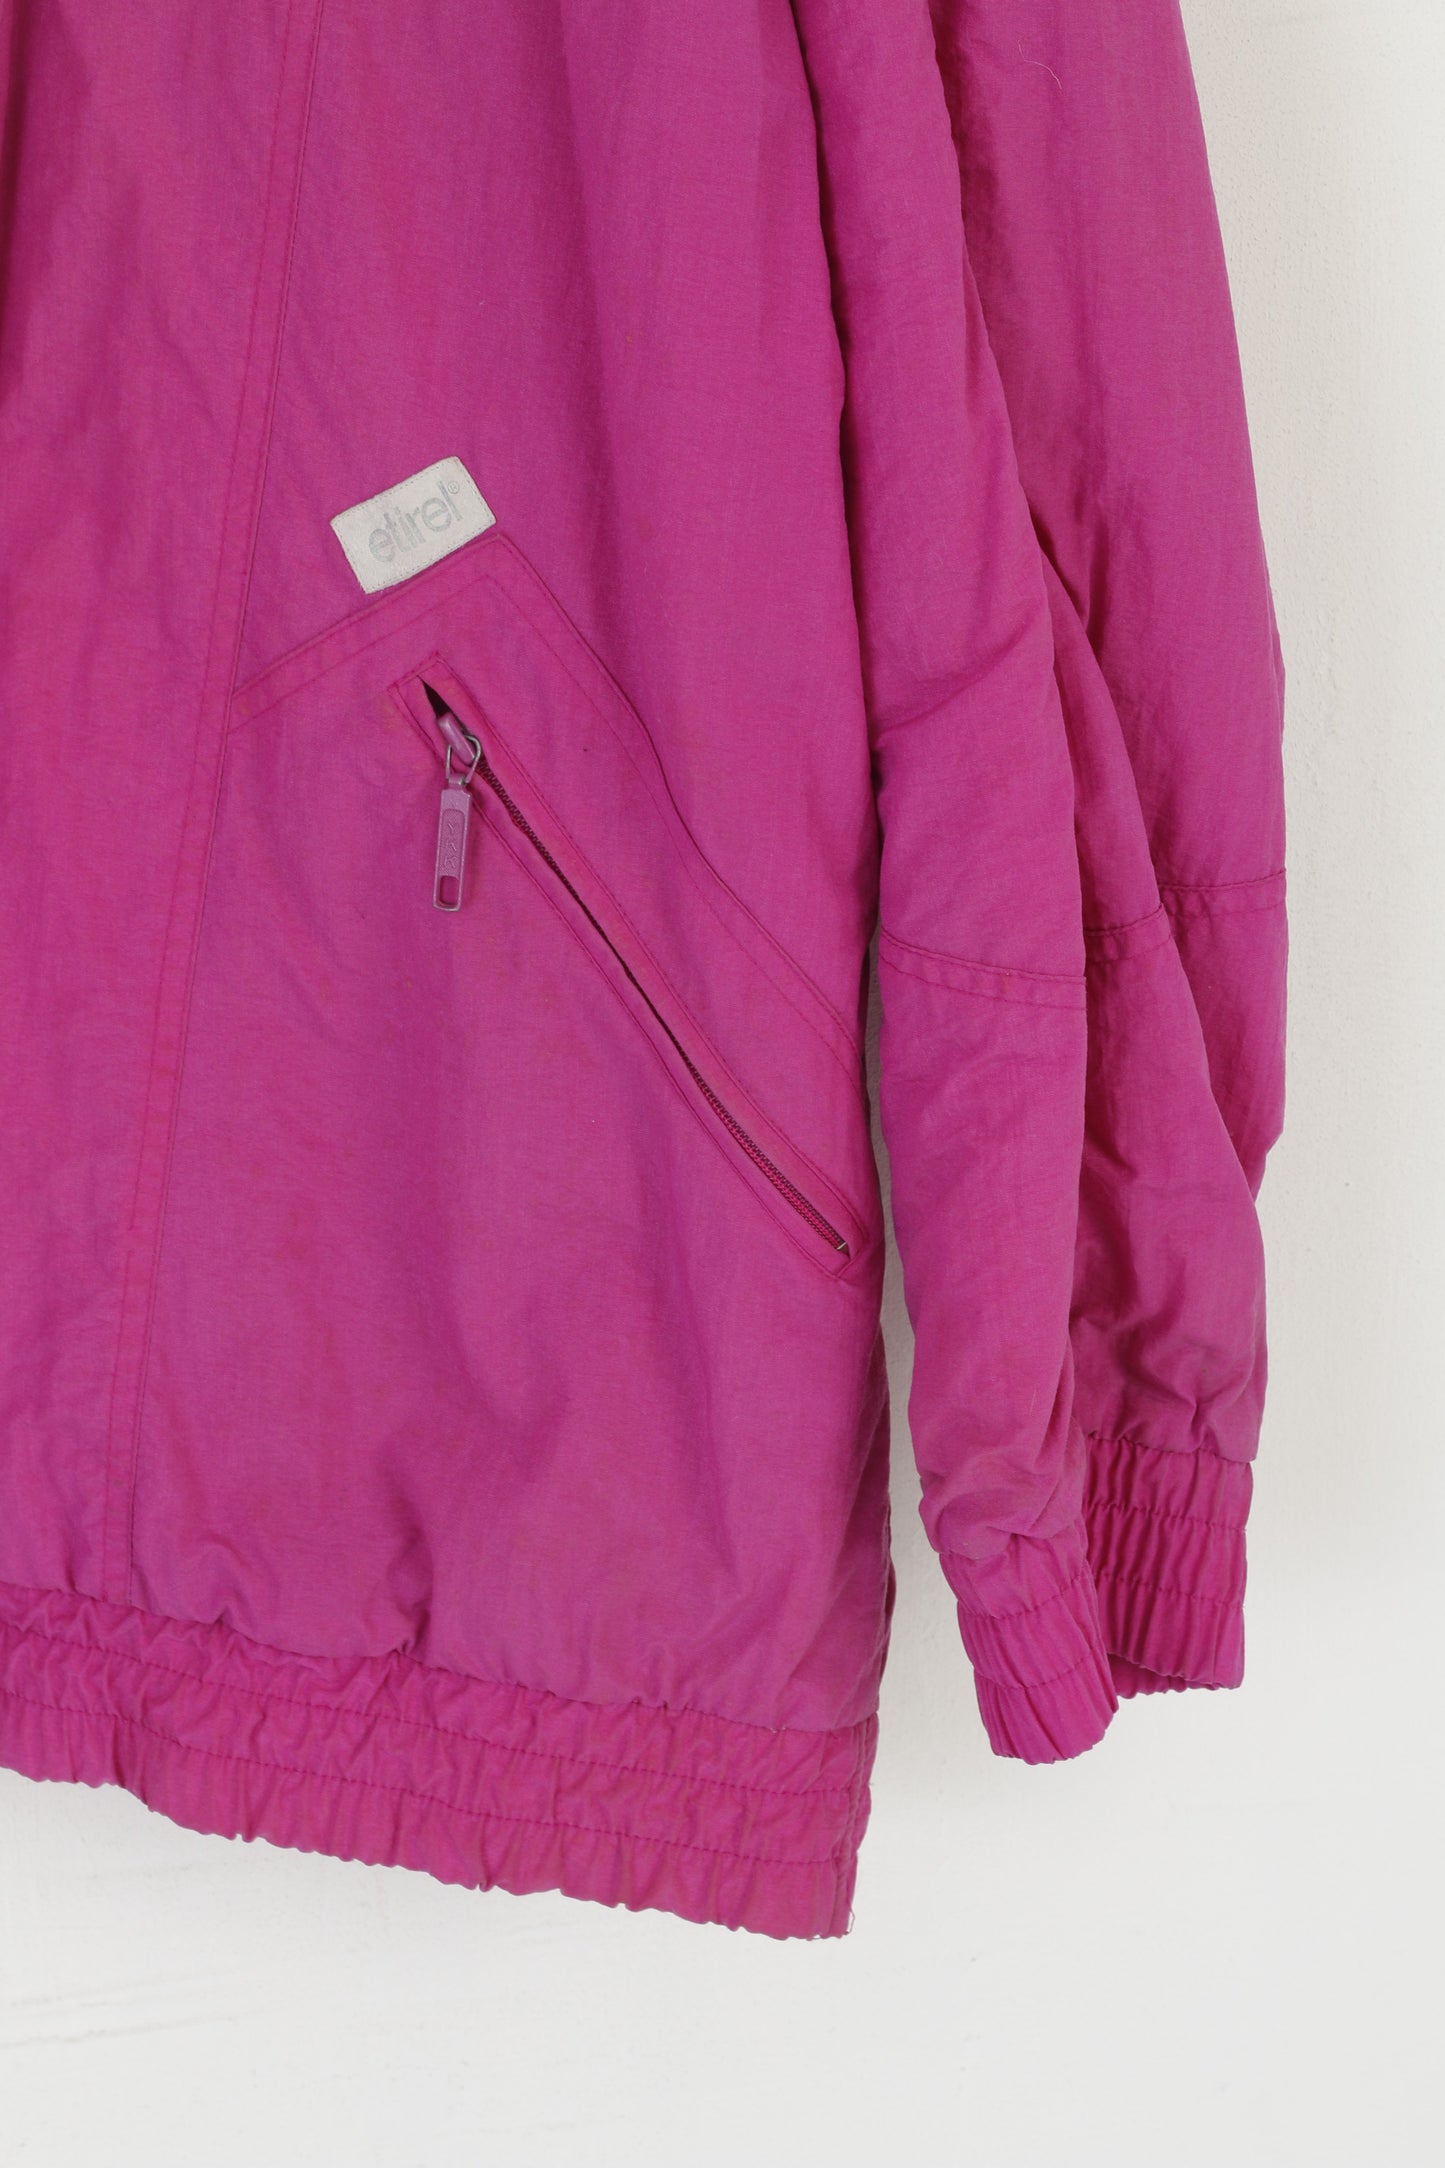 Etirel Le Style Women XL Bomber Jacket Purple Vintage Outdoor Nylon Waterproof Top